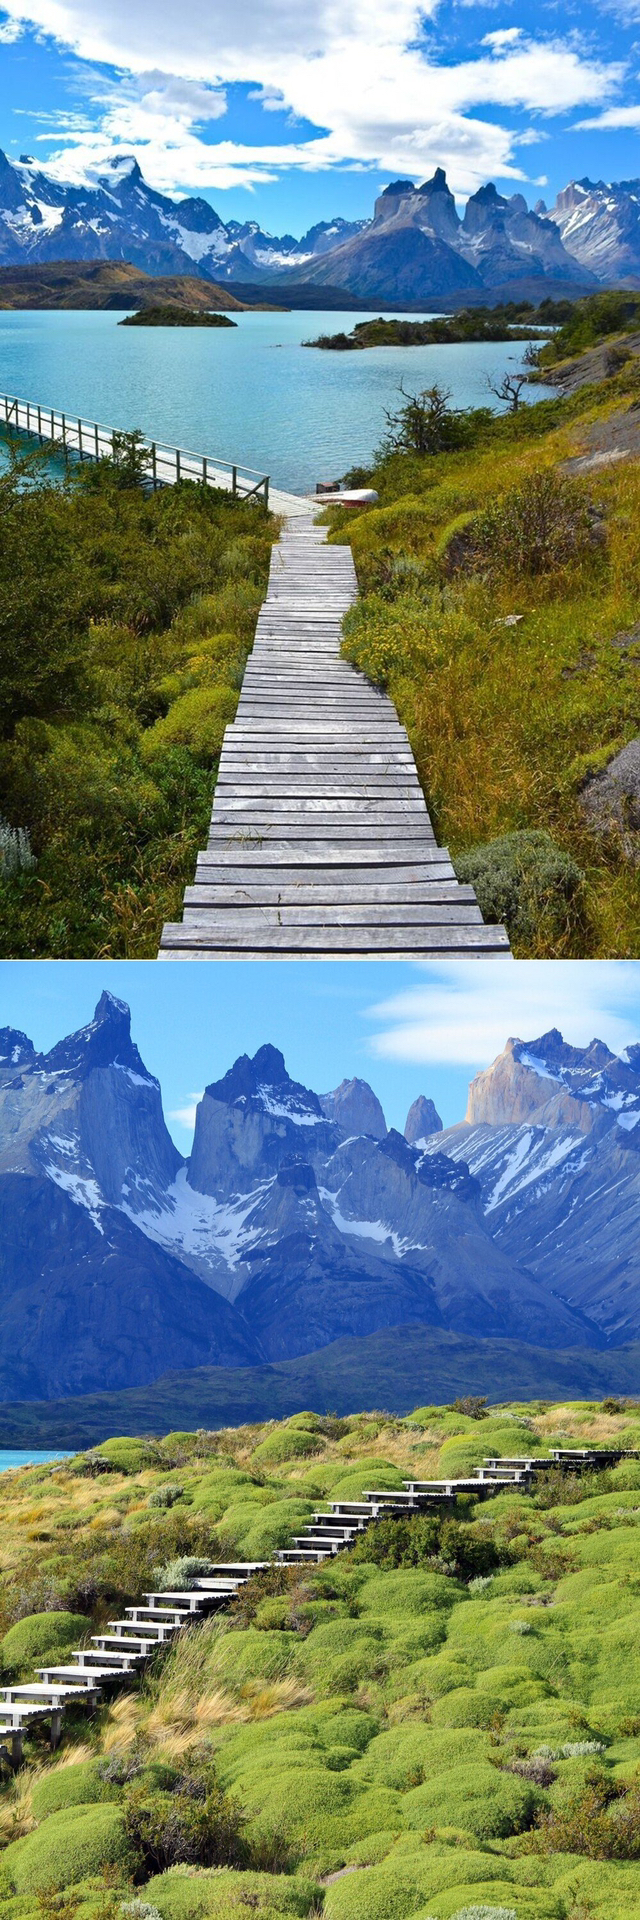 세계에서 가장 아름다운 계단 - 꾸르